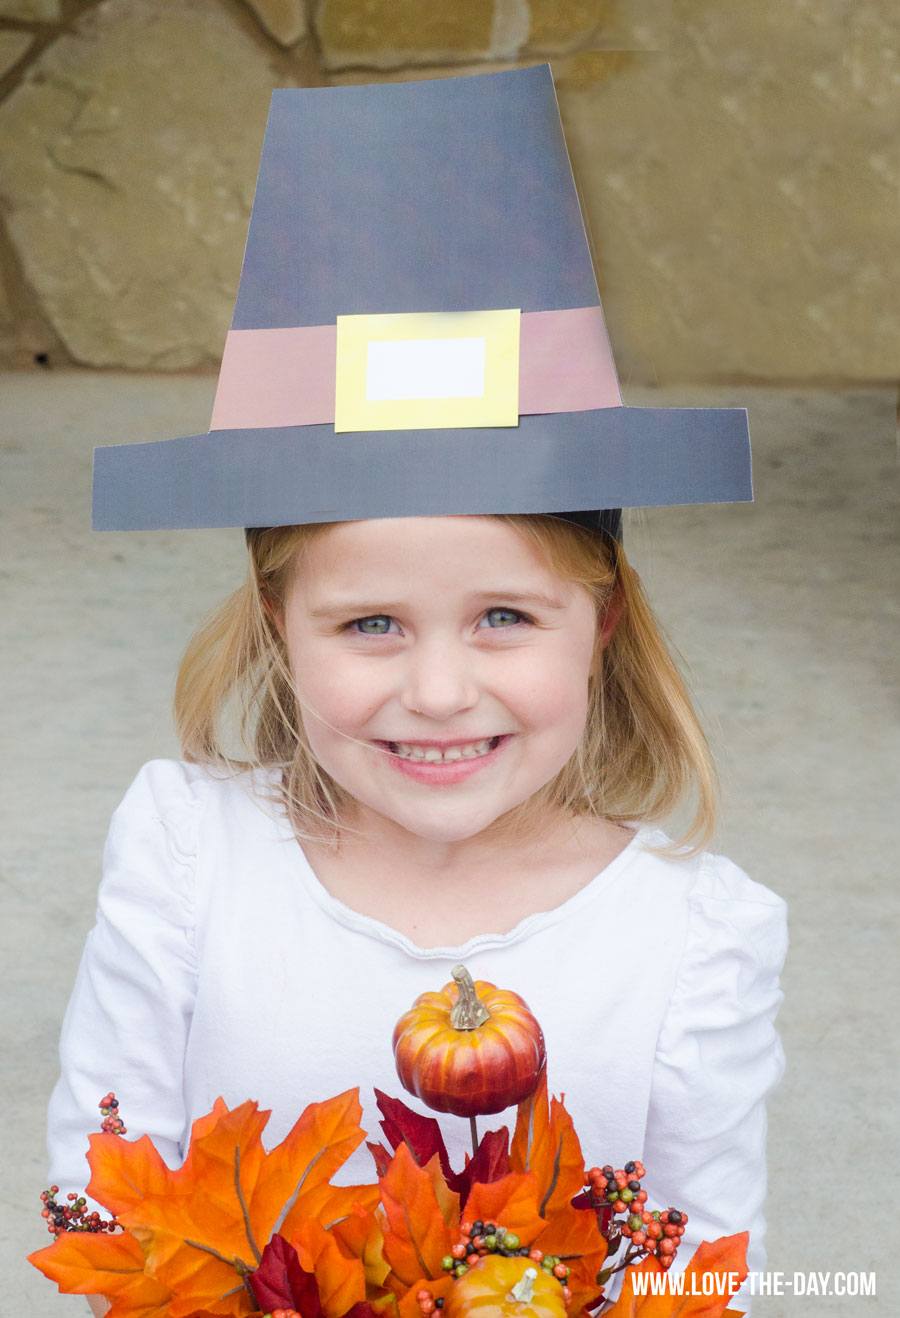 Pilgrim crafts for kids: pilgrim hat tutorial